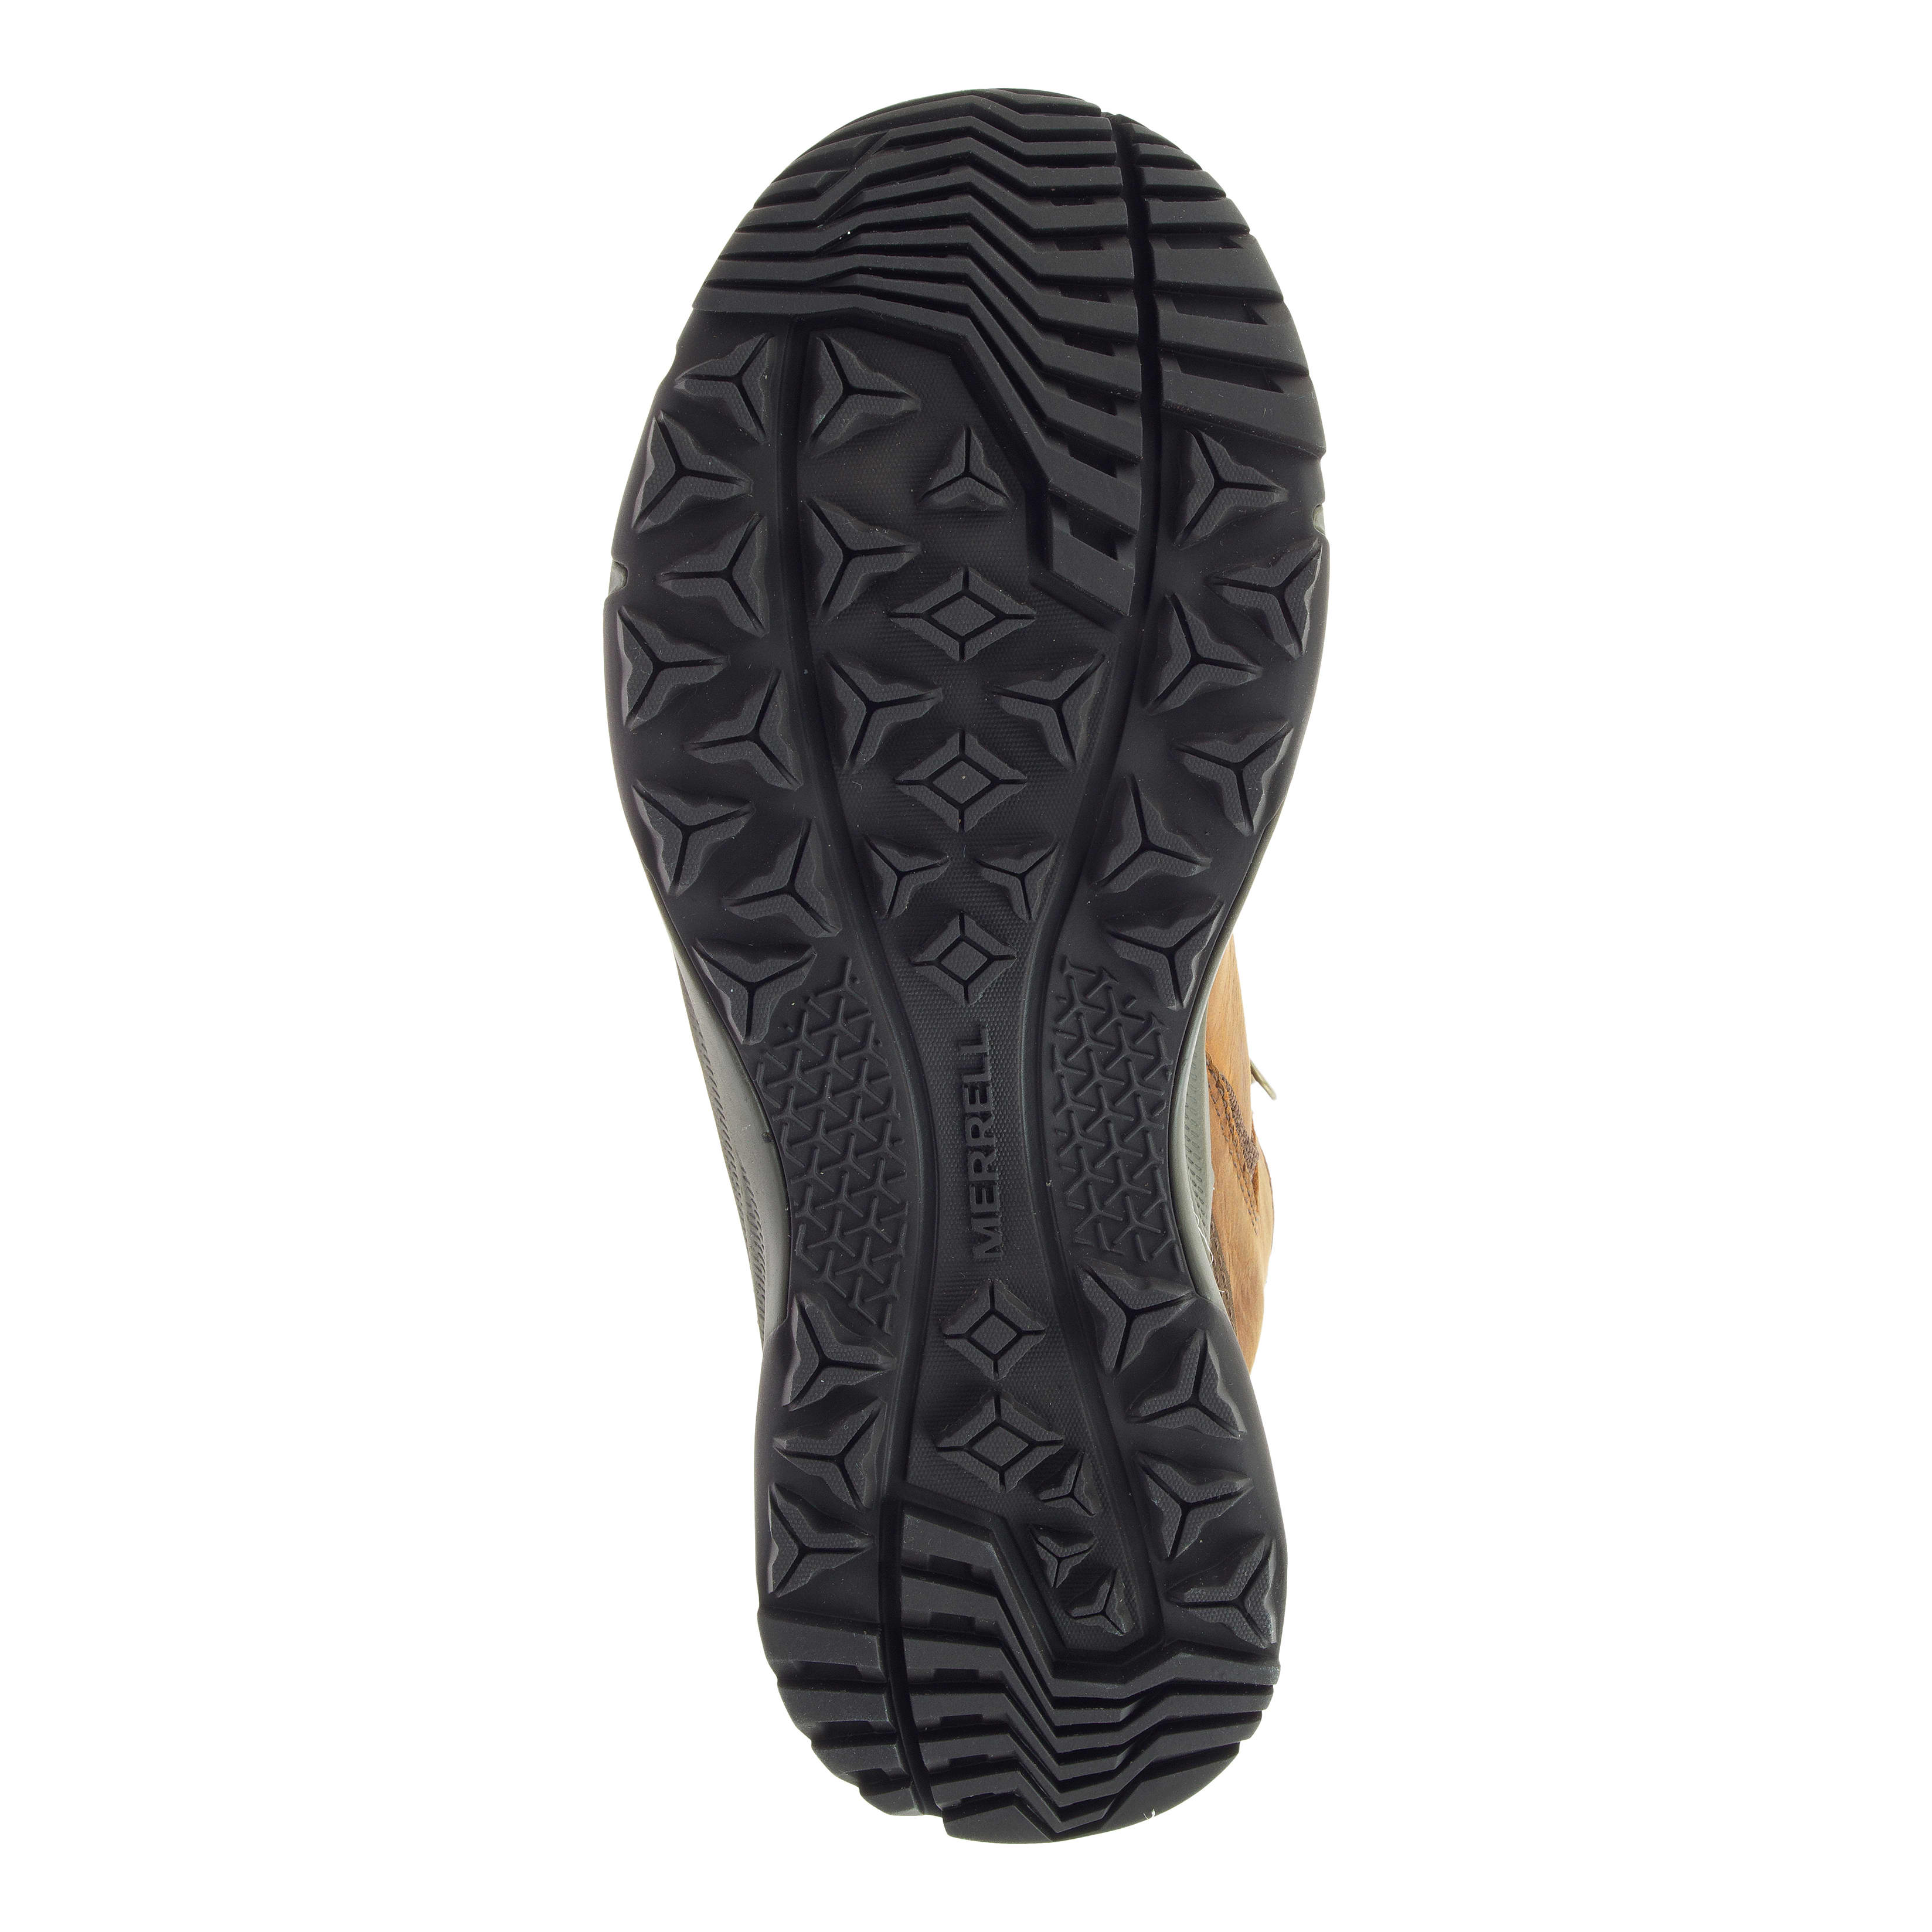 Merrell® Women’s Erie Leather Mid Waterproof Hiker - sole